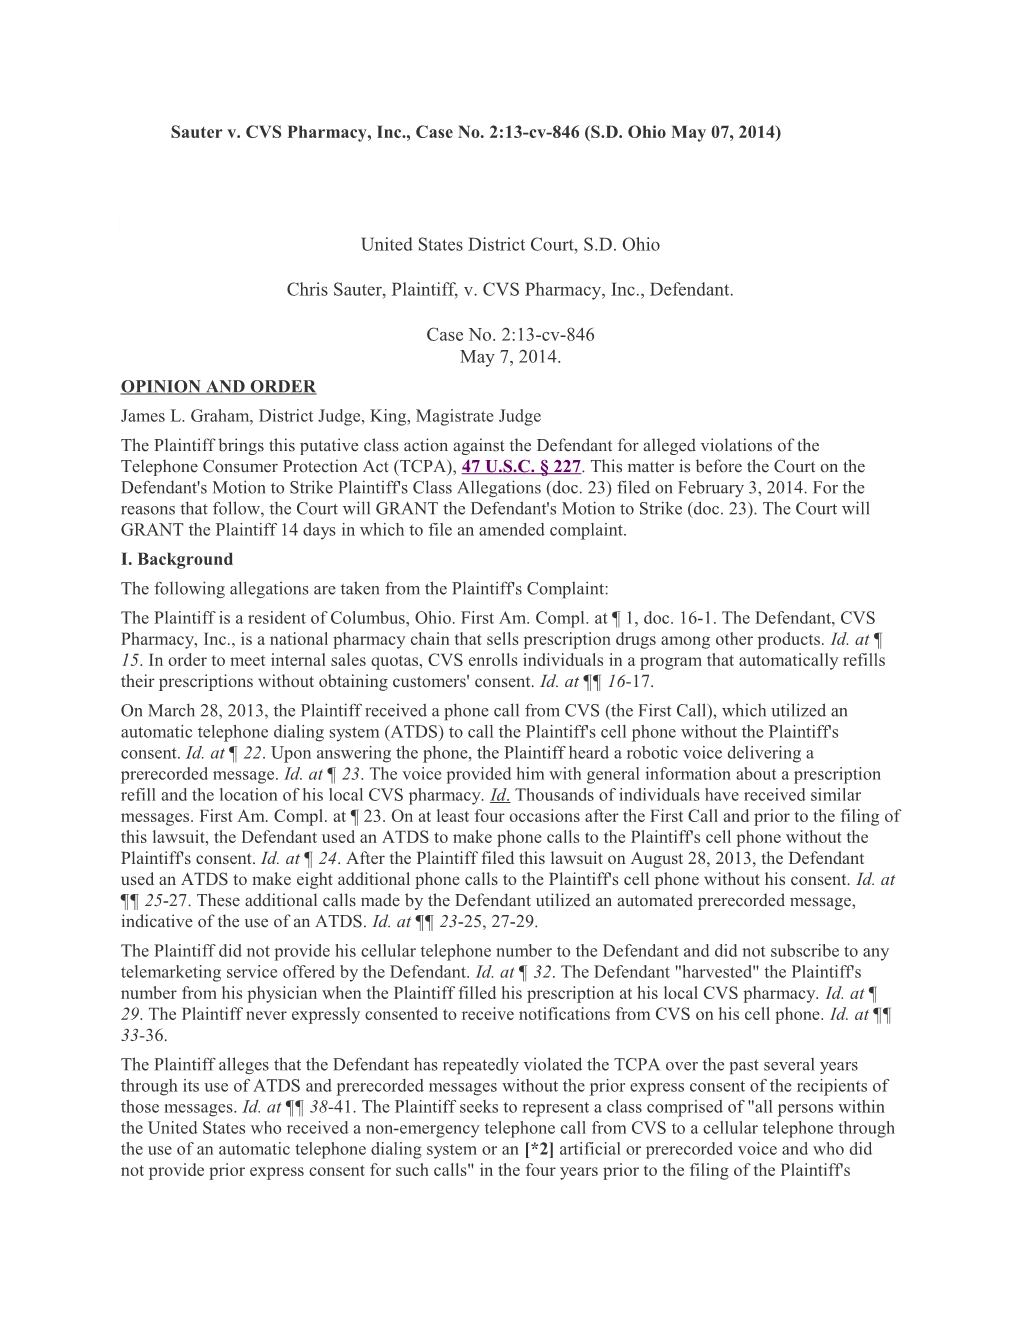 Sauter V. CVS Pharmacy, Inc., Case No. 2:13-Cv-846 (S.D. Ohio May 07, 2014)